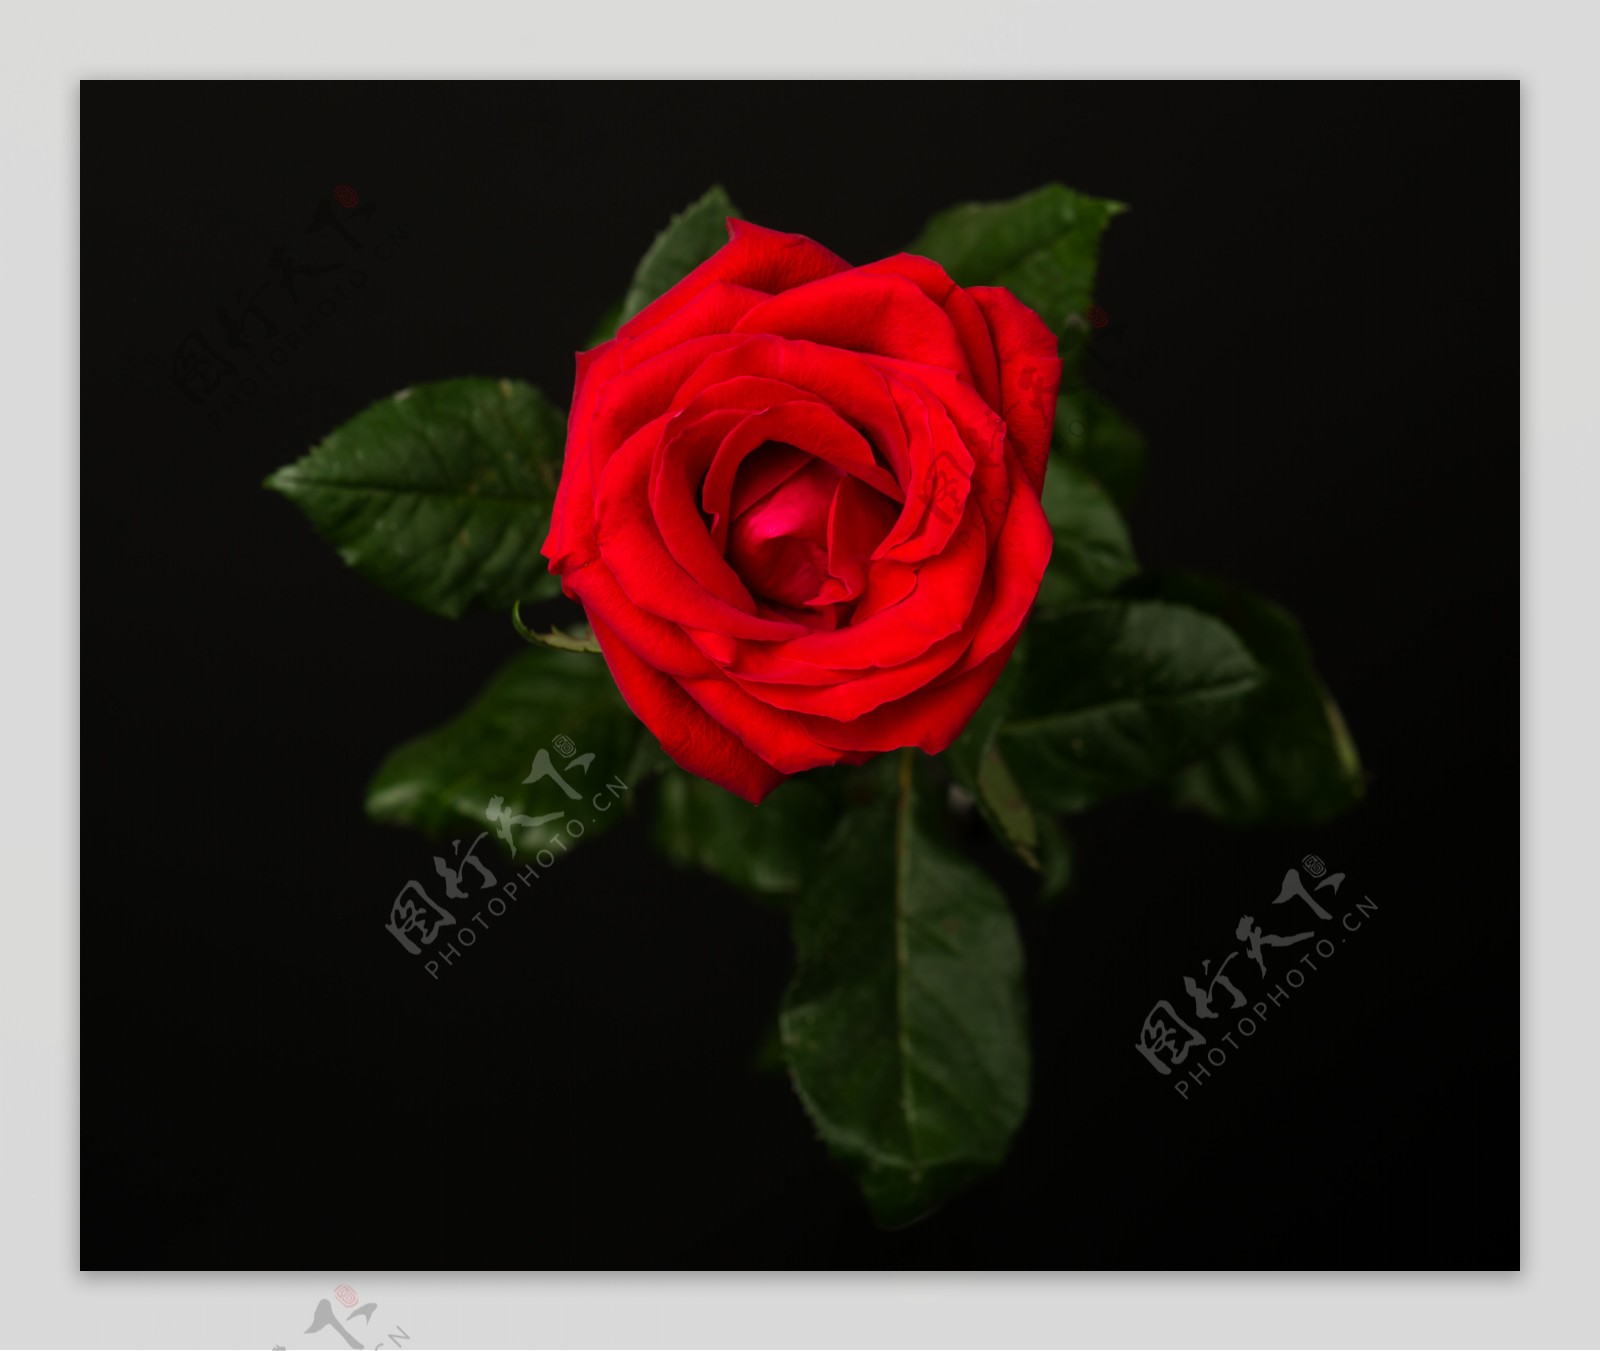 黑夜里红色的玫瑰更加艳丽夺目